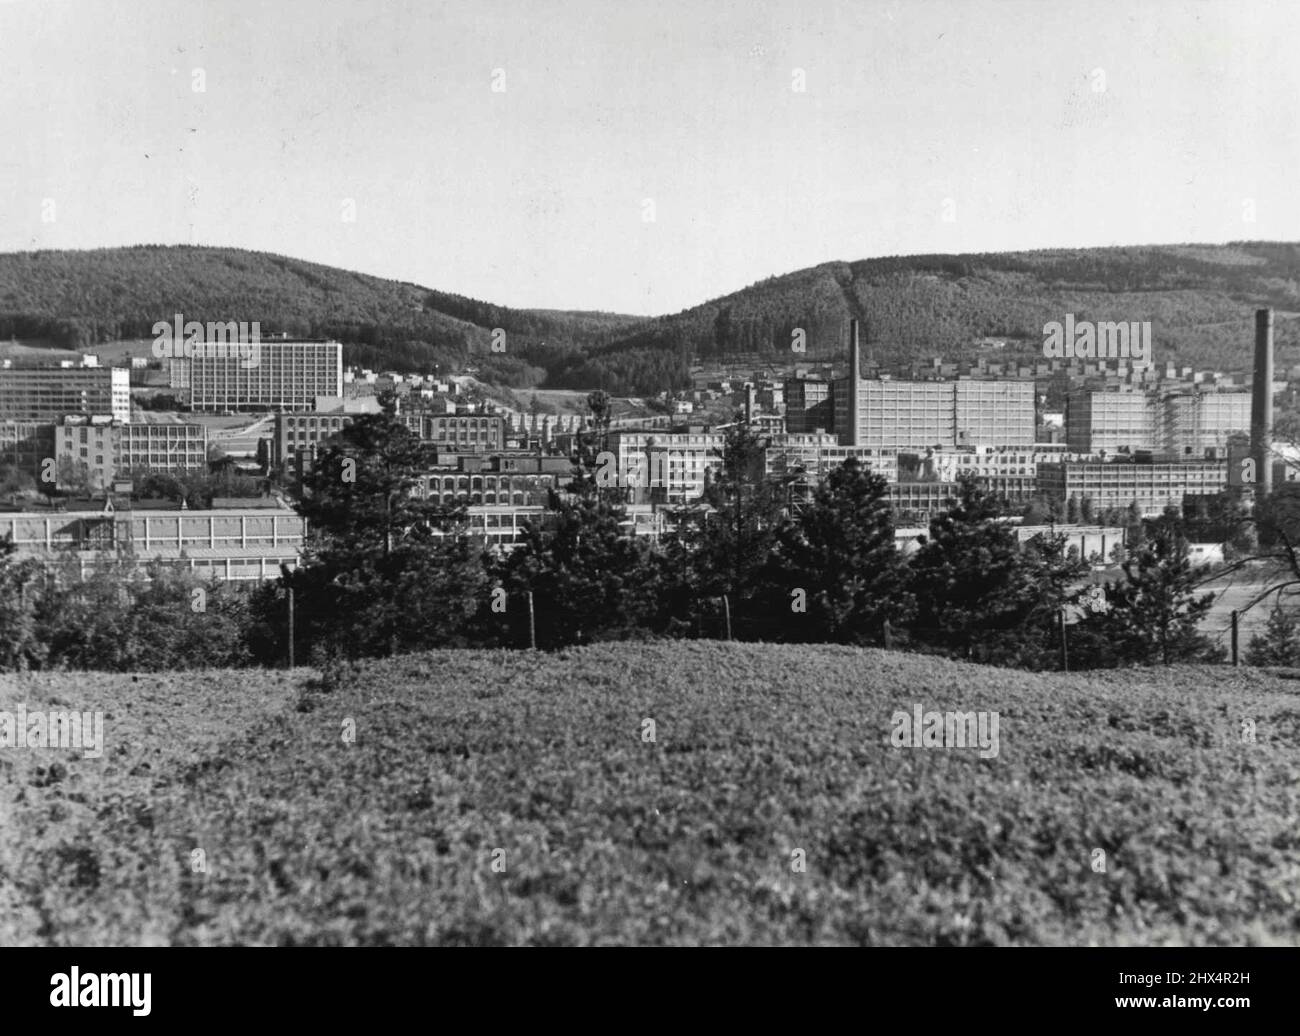 Usines Bata - vue générale. La fabrique de bottes de Zlin, en Tchécoslovaquie, autour de laquelle Bata construit une ville de 50 000 personnes. 12 octobre 1937. Banque D'Images